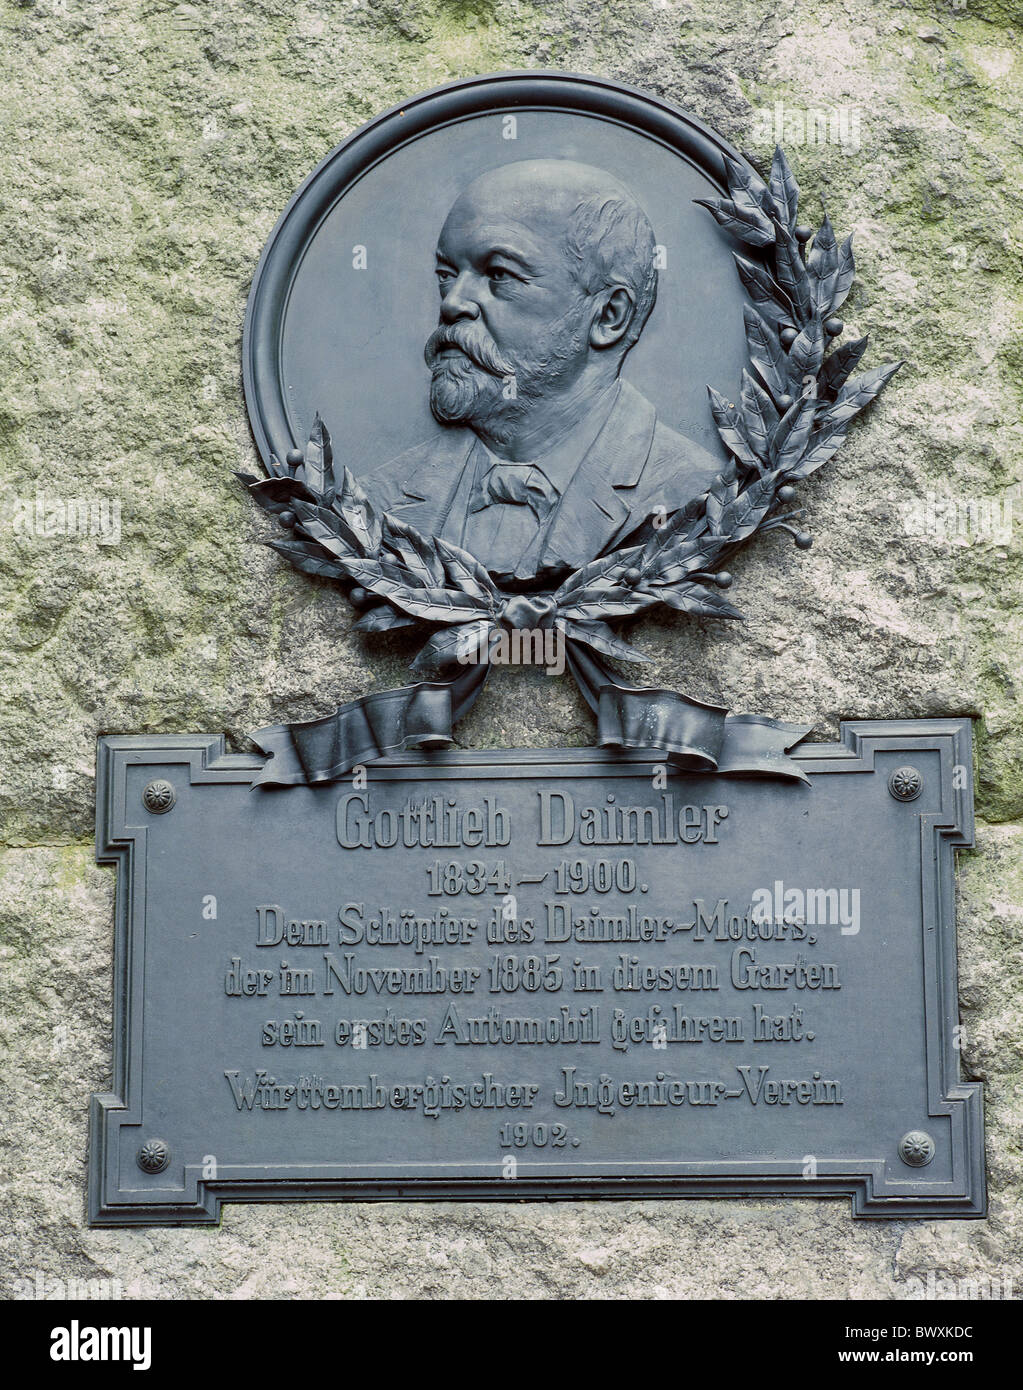 Allemagne Europe ville ville de Stuttgart Gottlieb Daimler secours tablette de pierre de l'industrie automobile voiture pioneer Banque D'Images